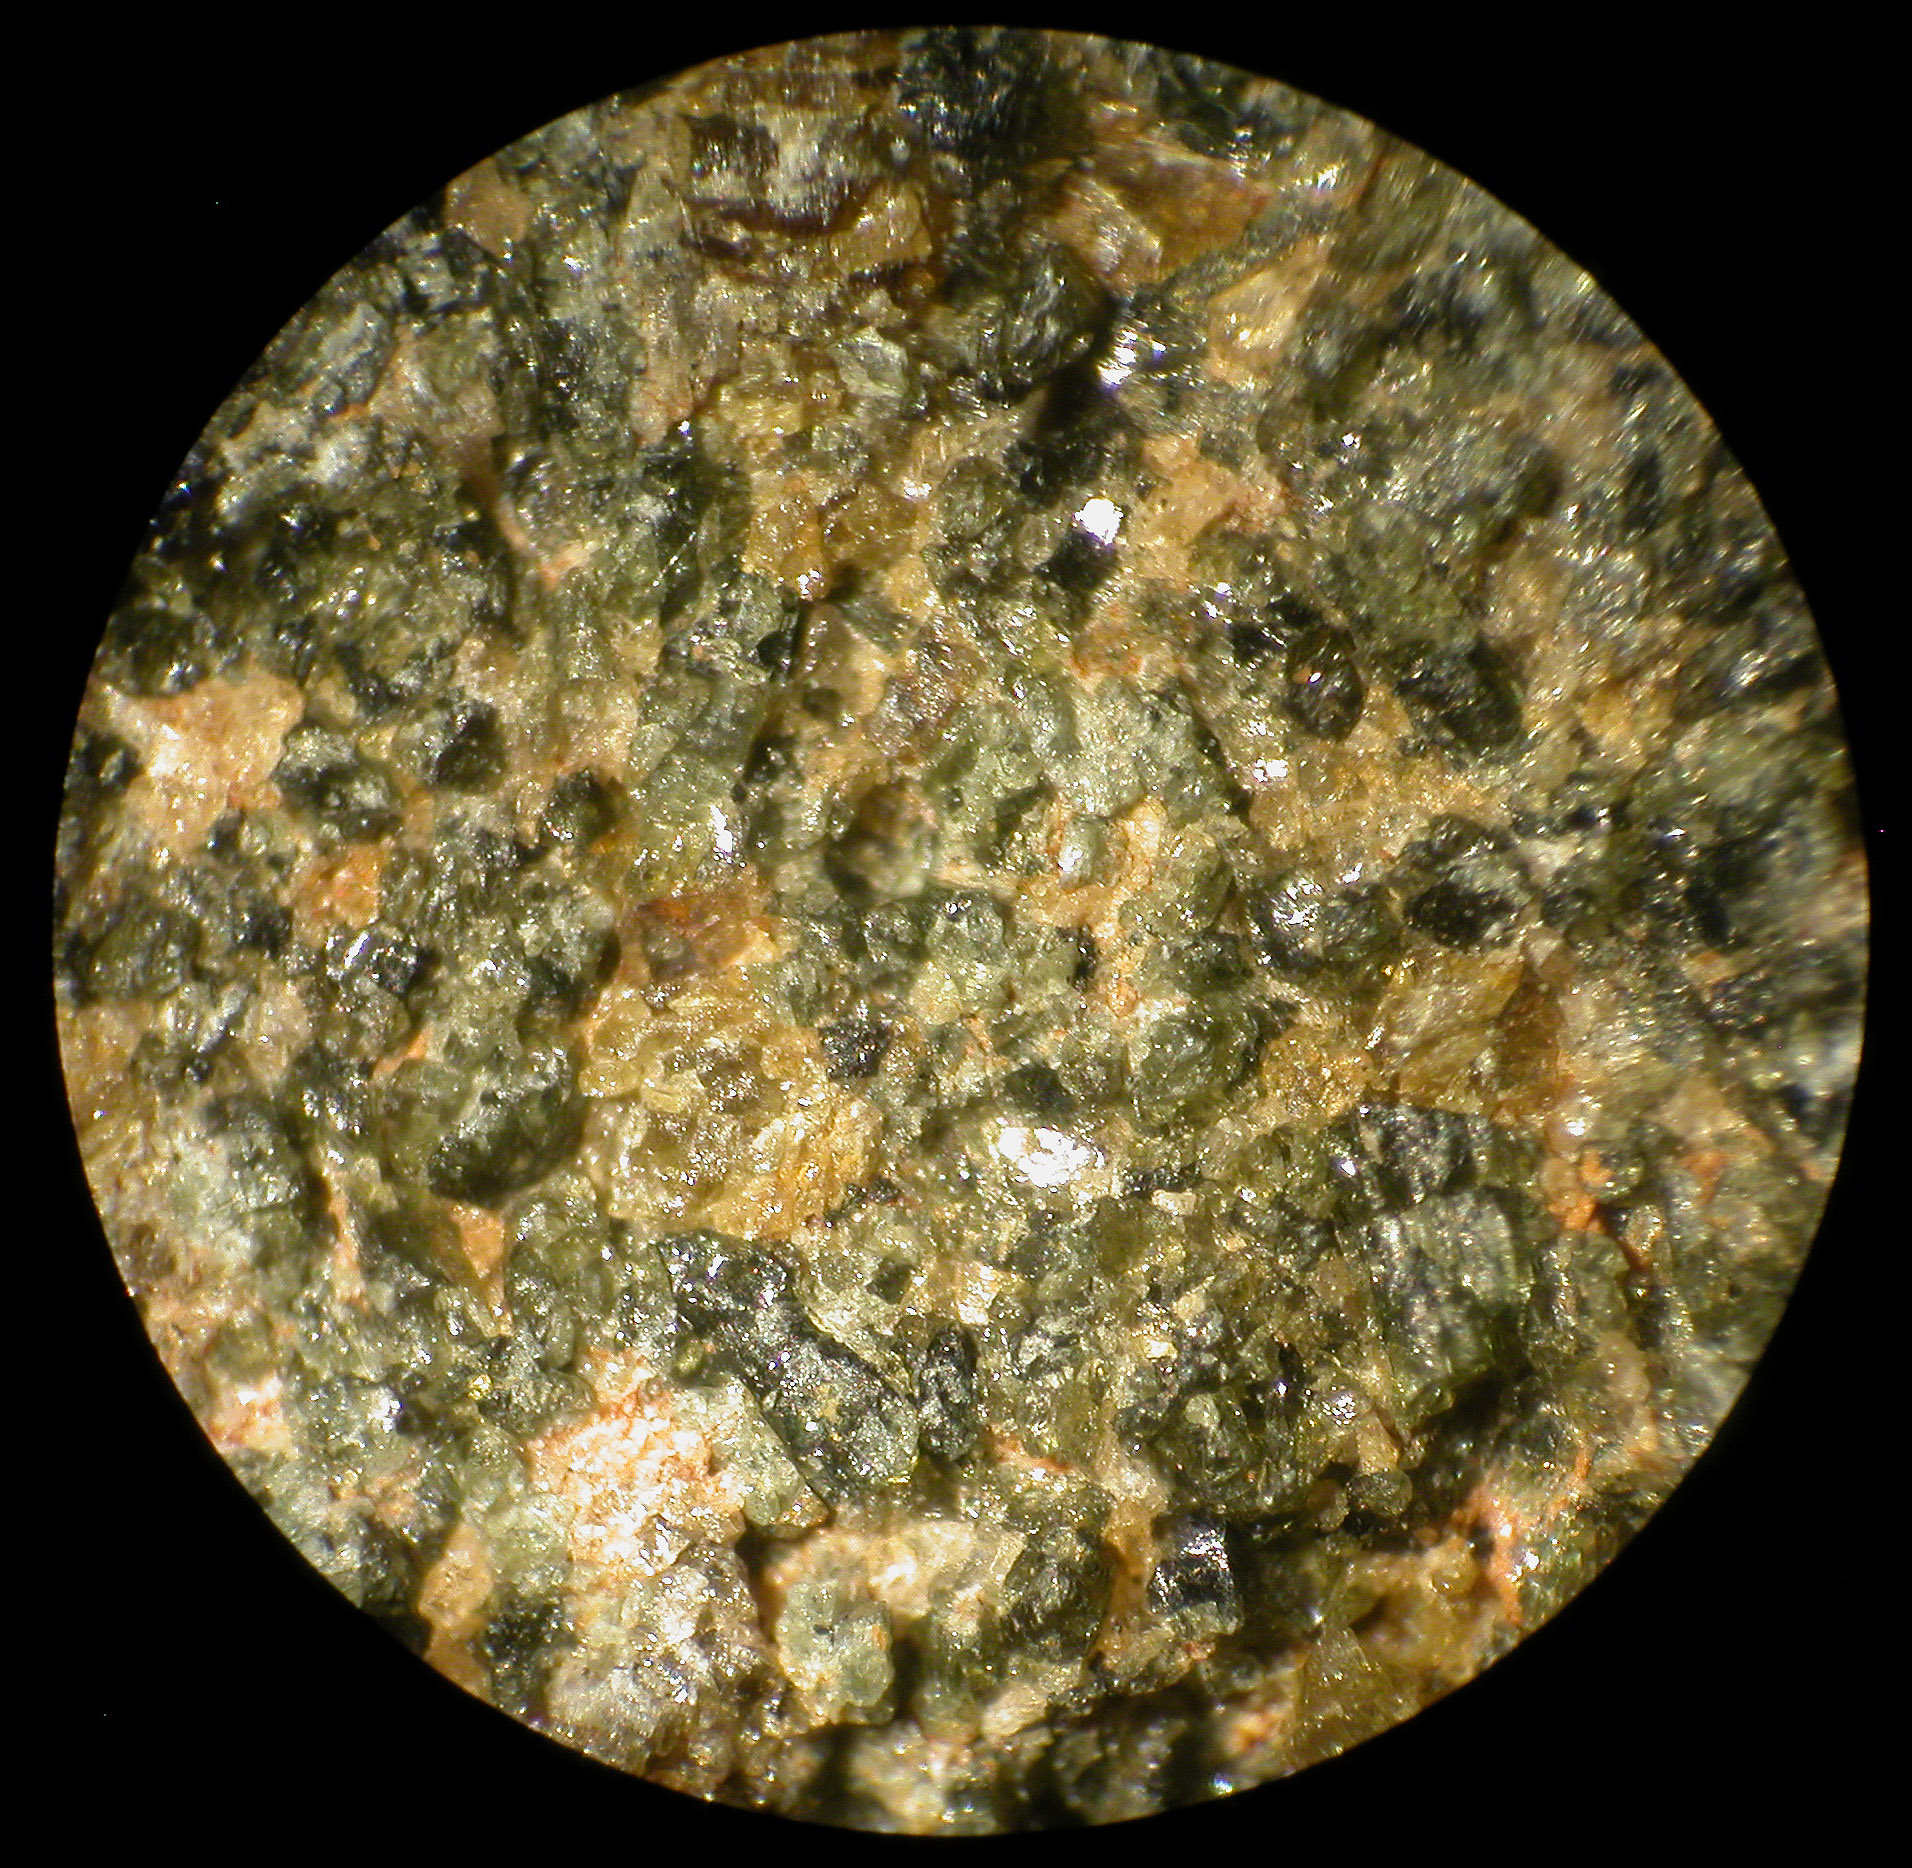 Mars Meteorite Nwa 998